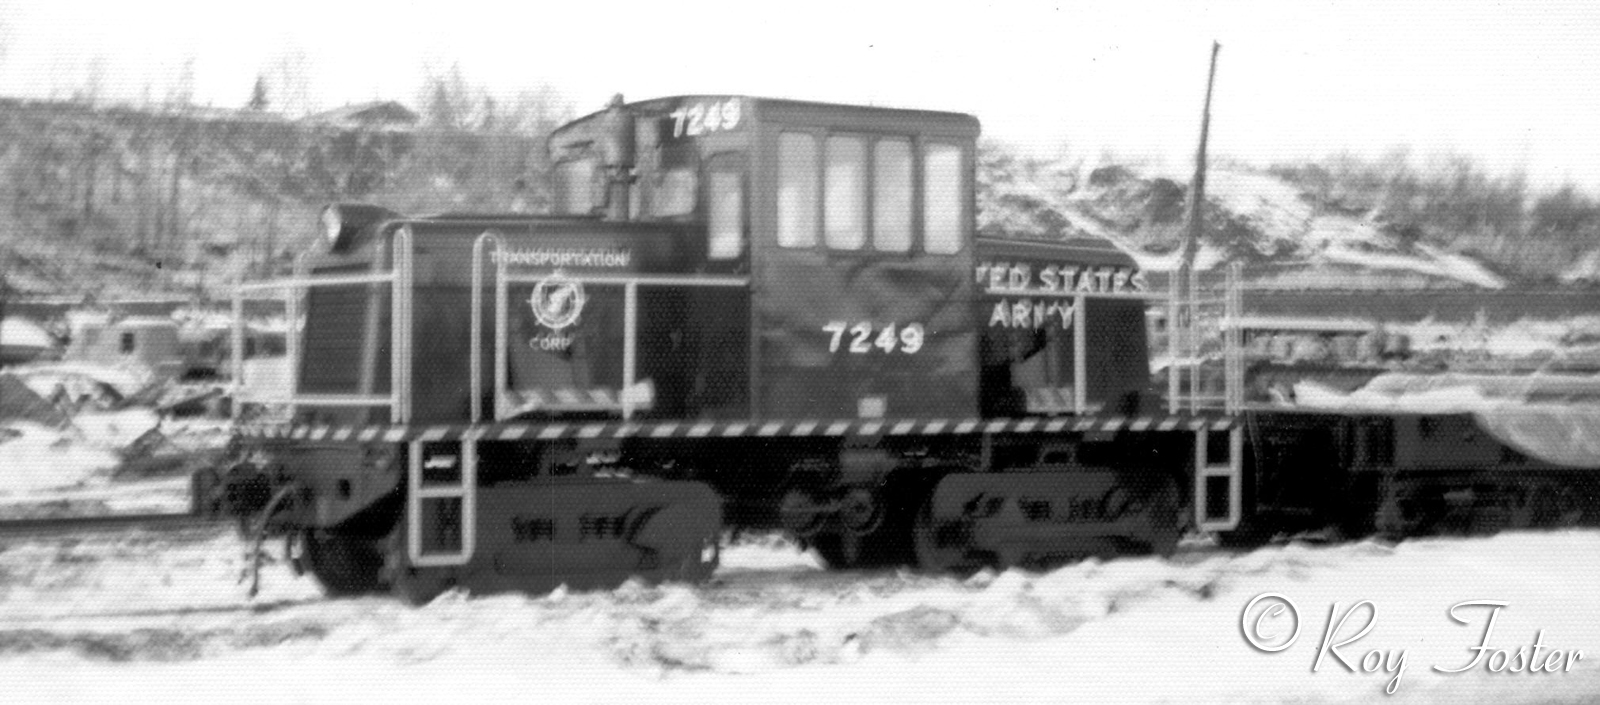 USA #7249 Anchorage, Mar. 12, 1974